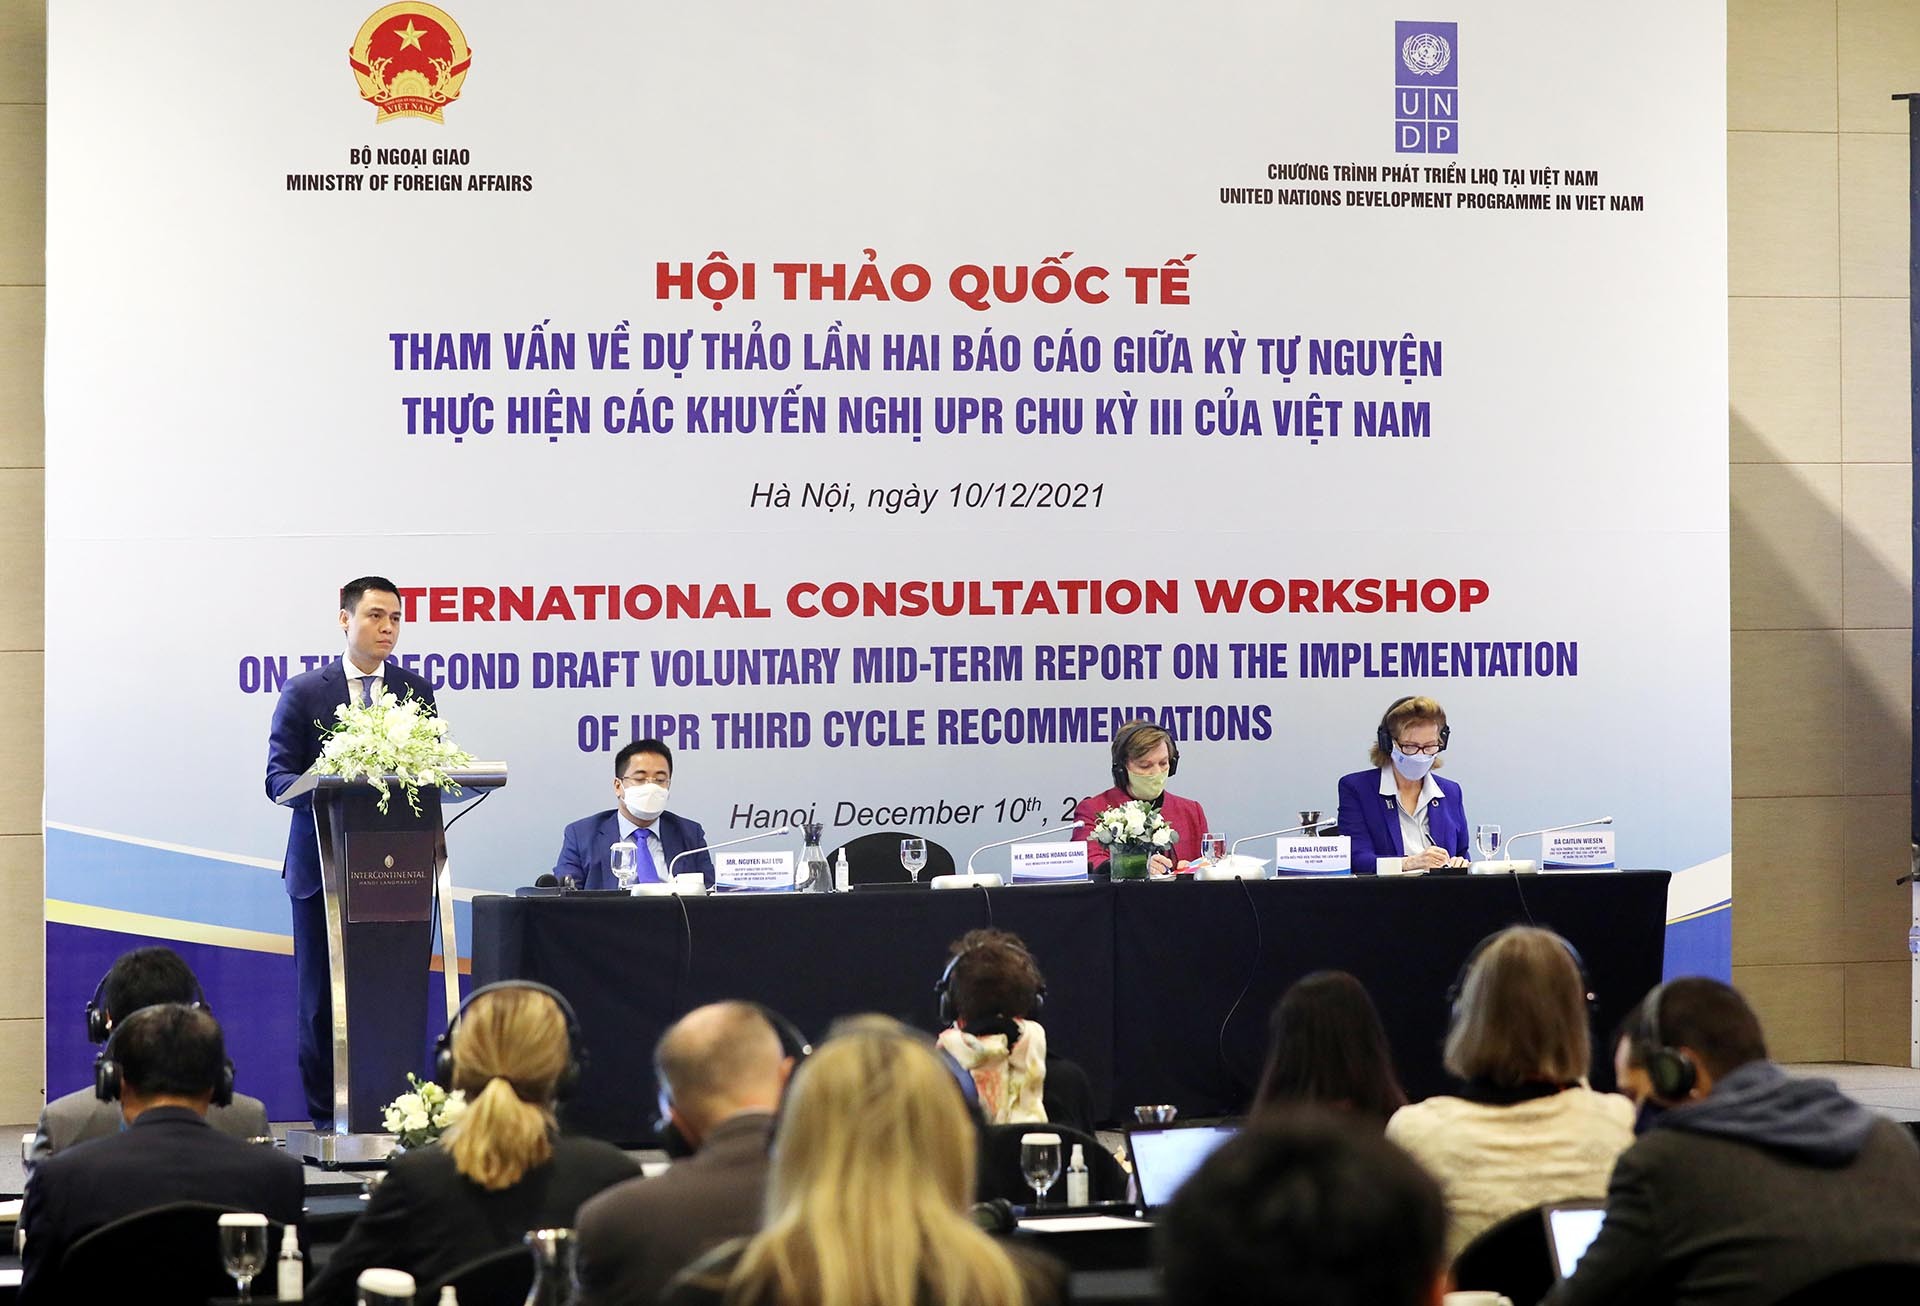 2021 - Năm ghi dấu nhiều thành tựu nổi bật trong hoạt động đối ngoại về quyền con người của Việt Nam